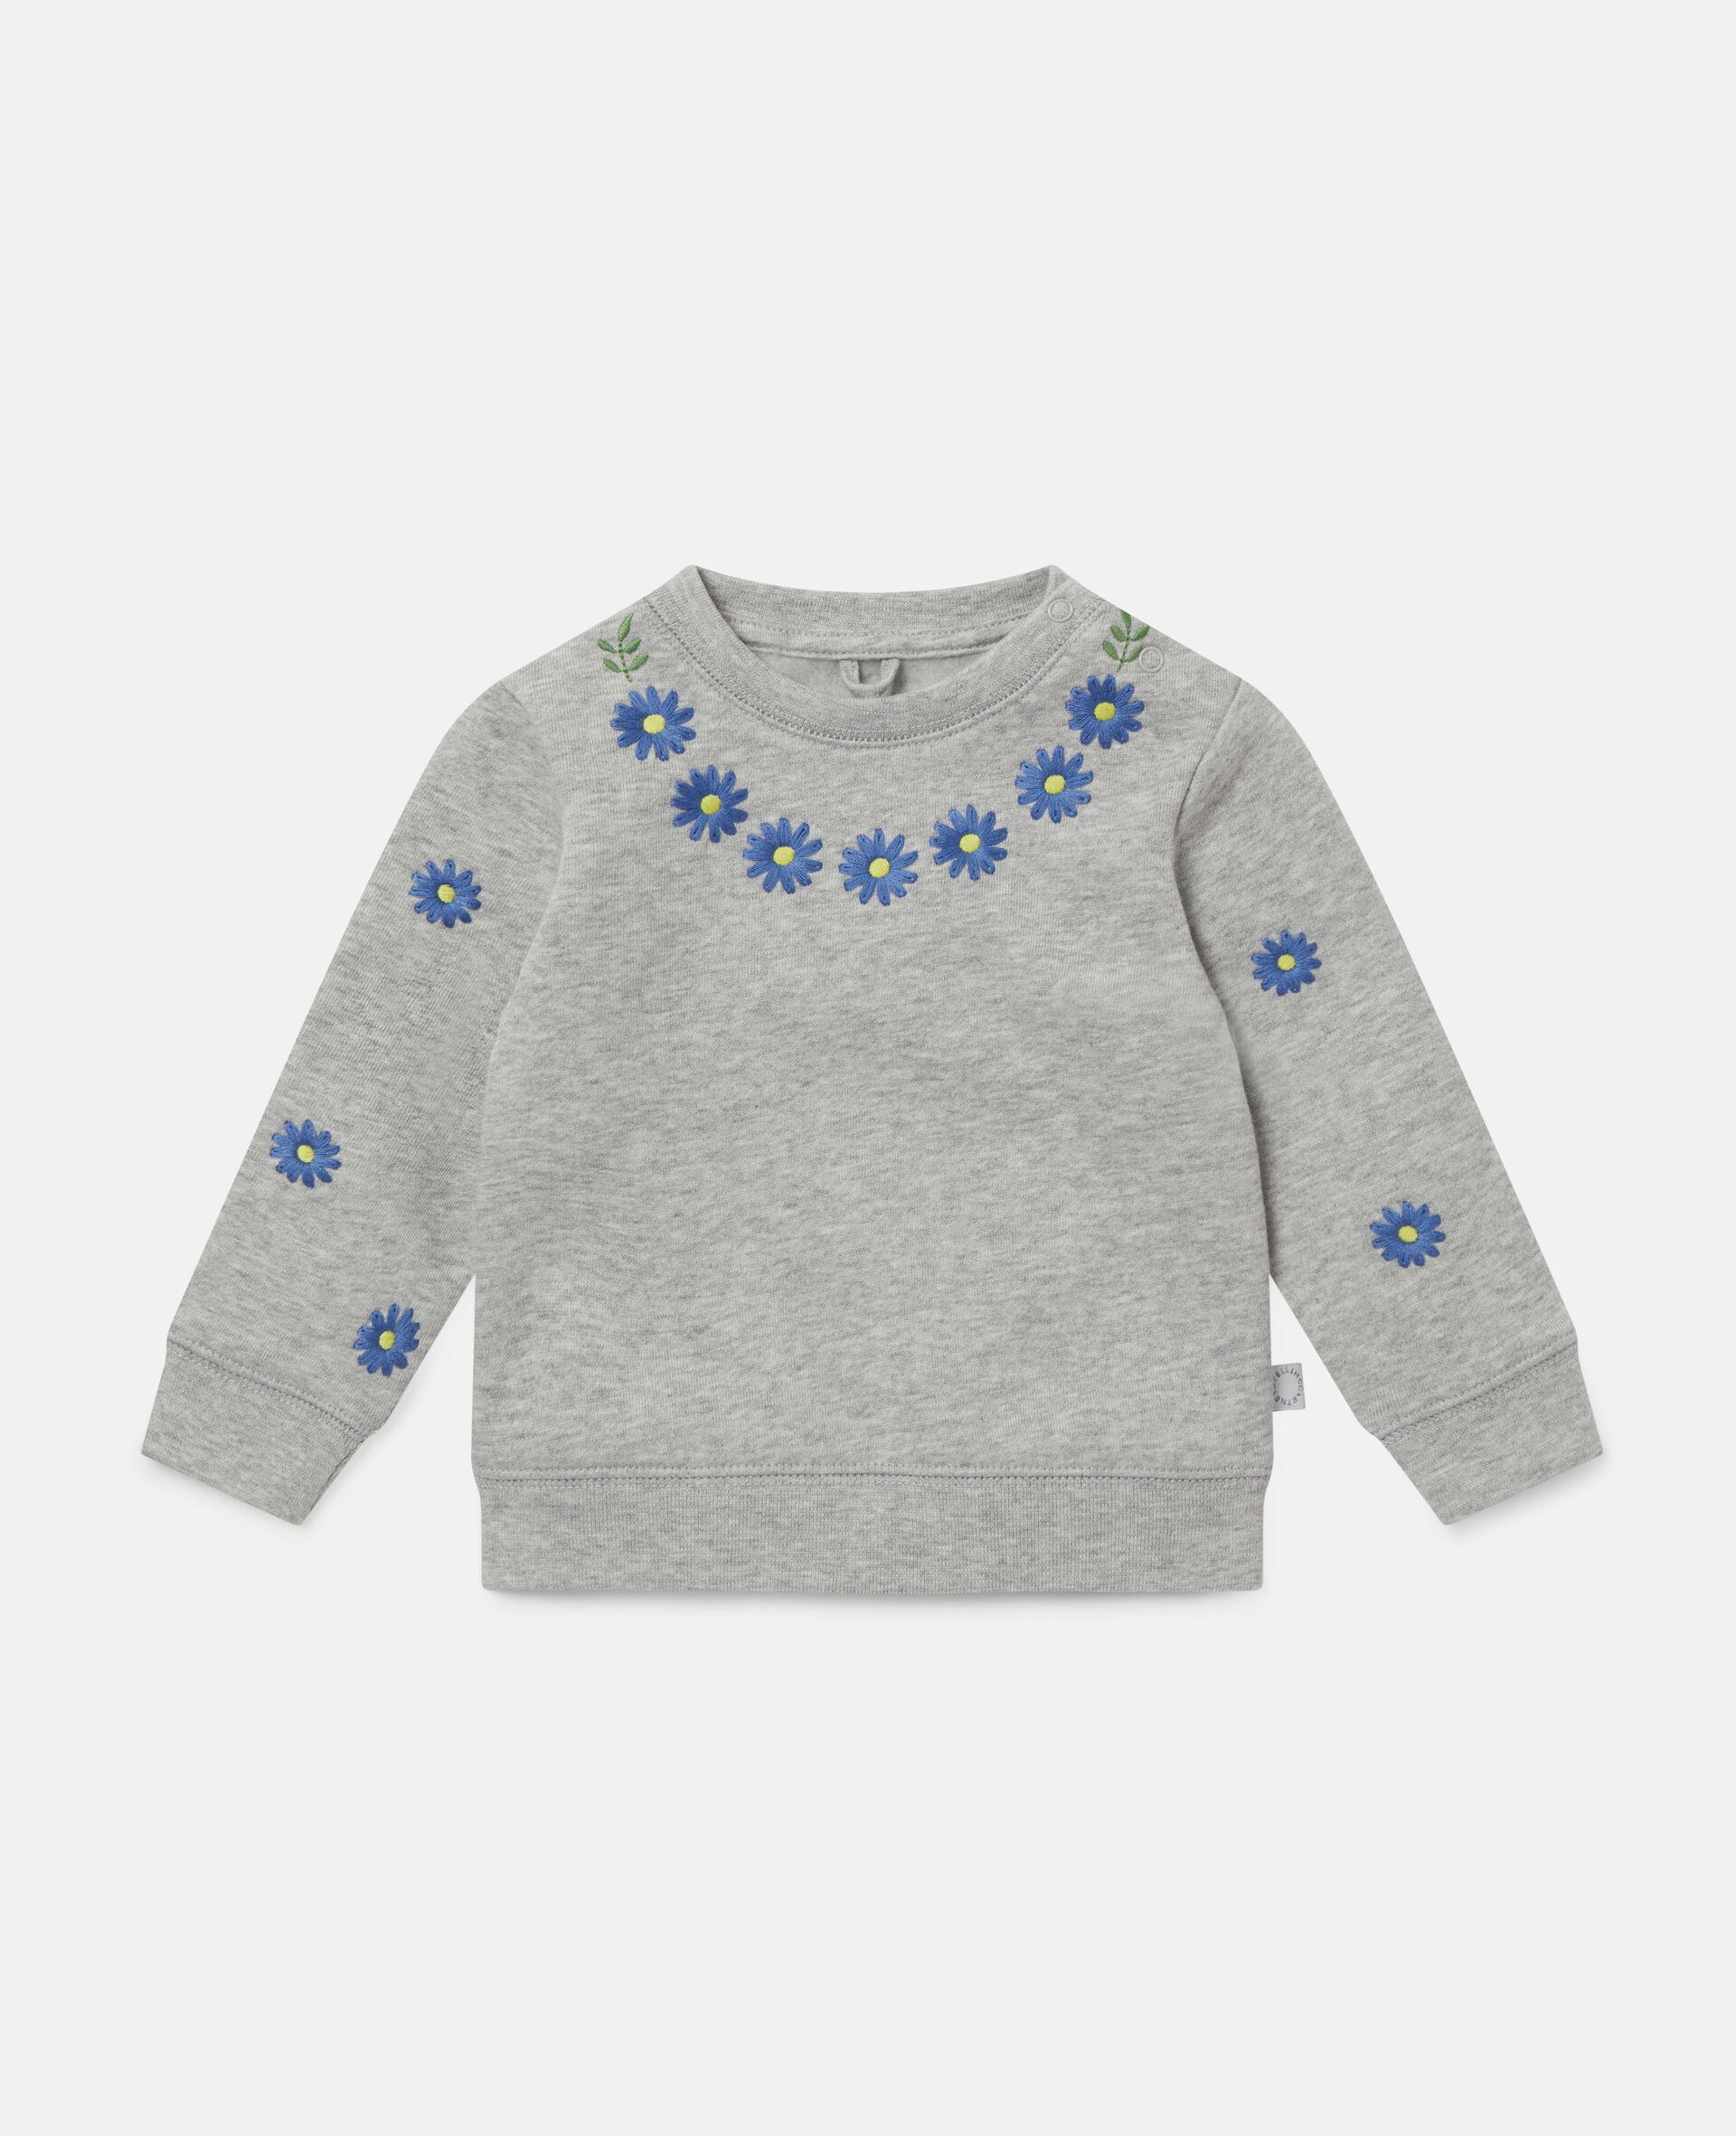 Embroidered Daisies Fleece Sweatshirt -Grey-large